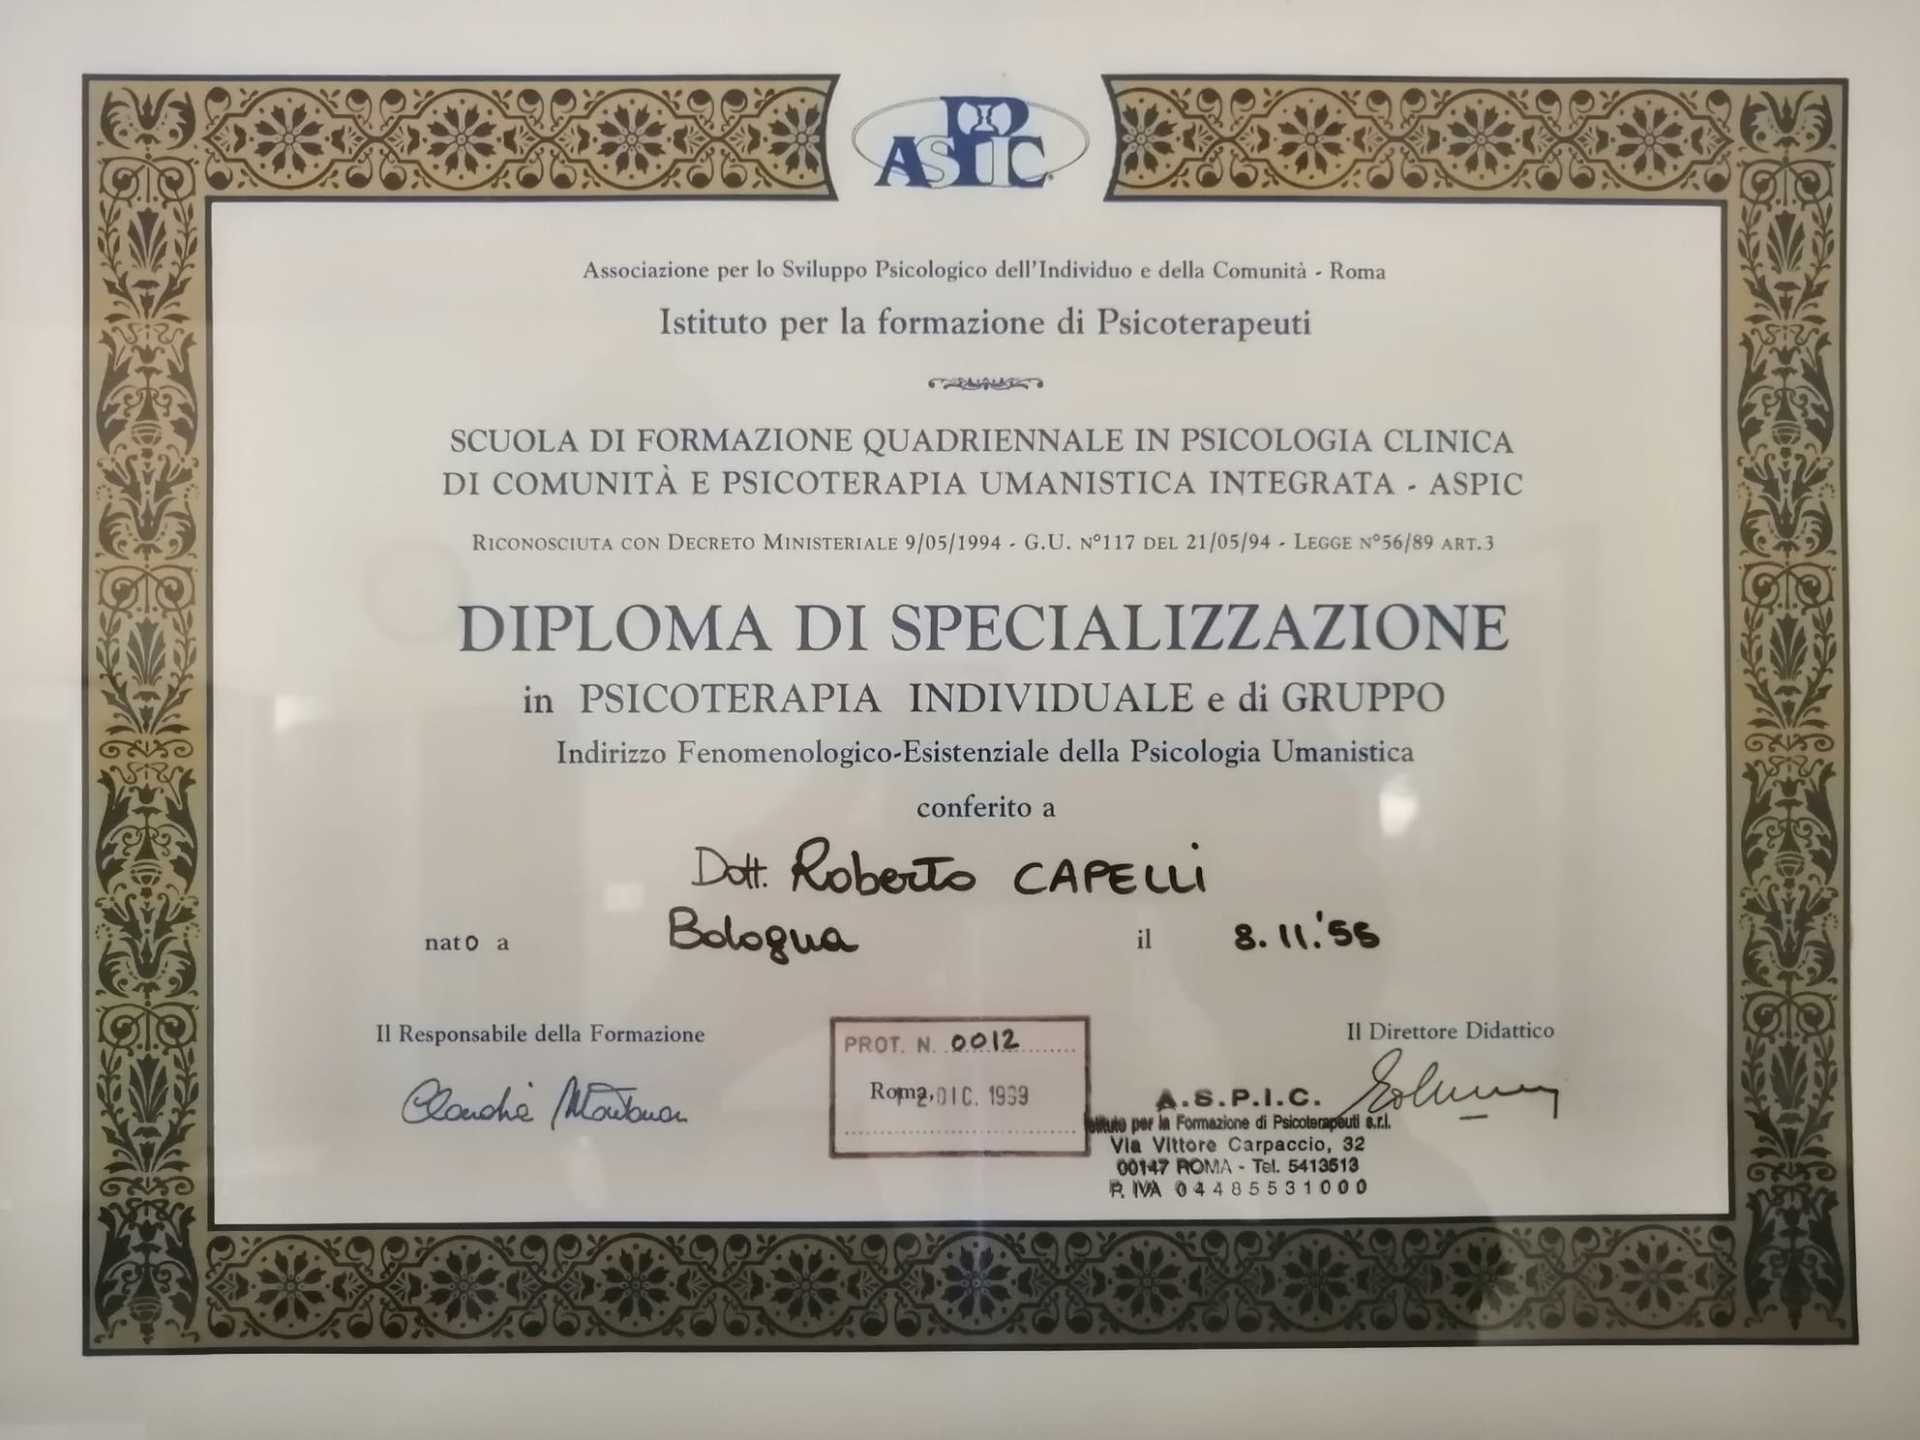 Specializzazione Psicoterapia, ASPIC Roma, Dott. Roberto Capelli, Casalecchio di Reno, Bologna